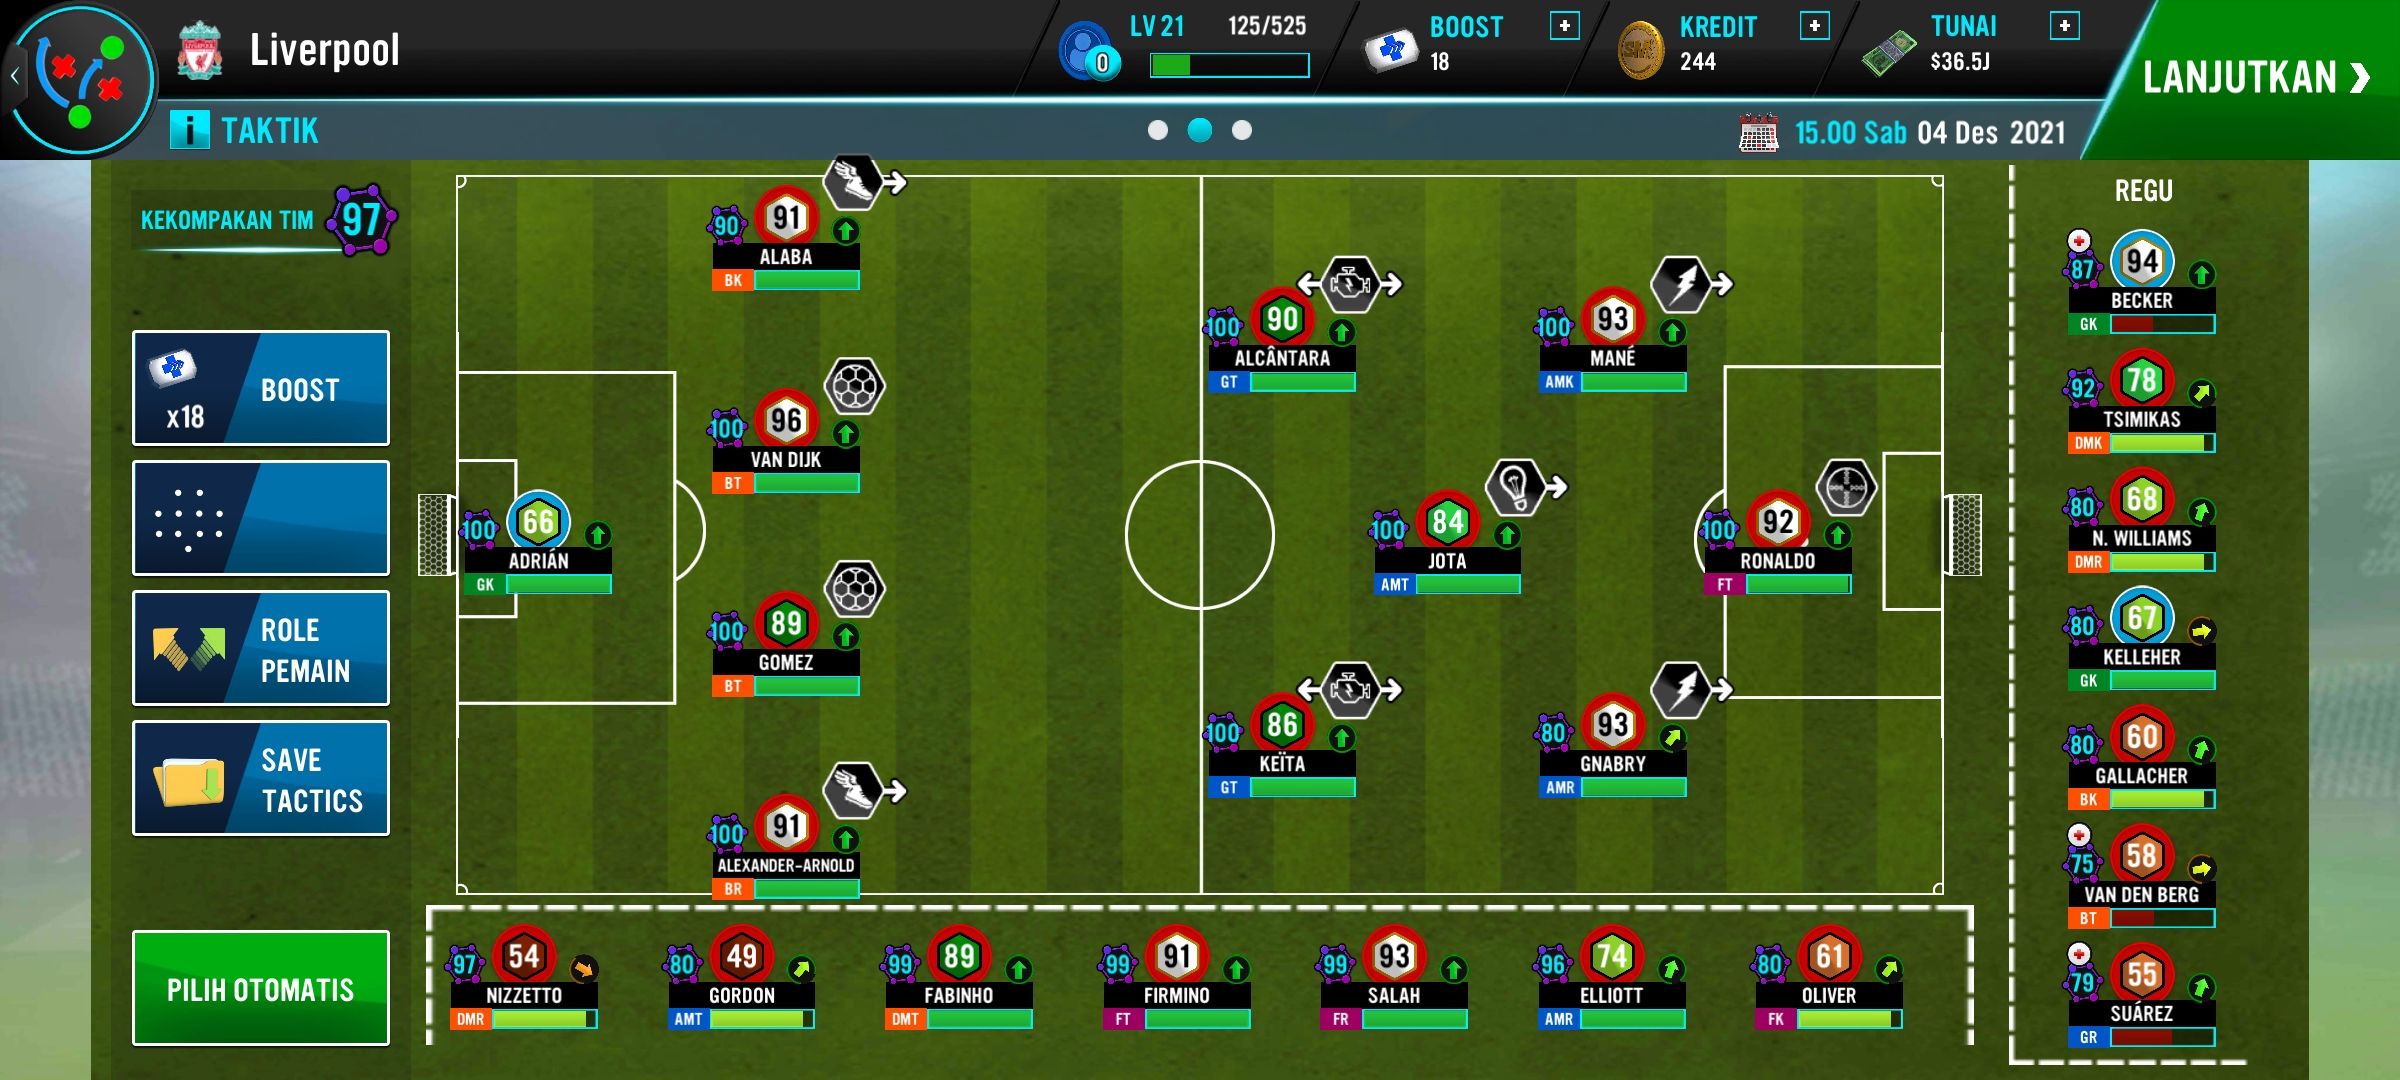 Formasi 443 dengan tipikal menyerang, dalam game Soccer Manager 2022